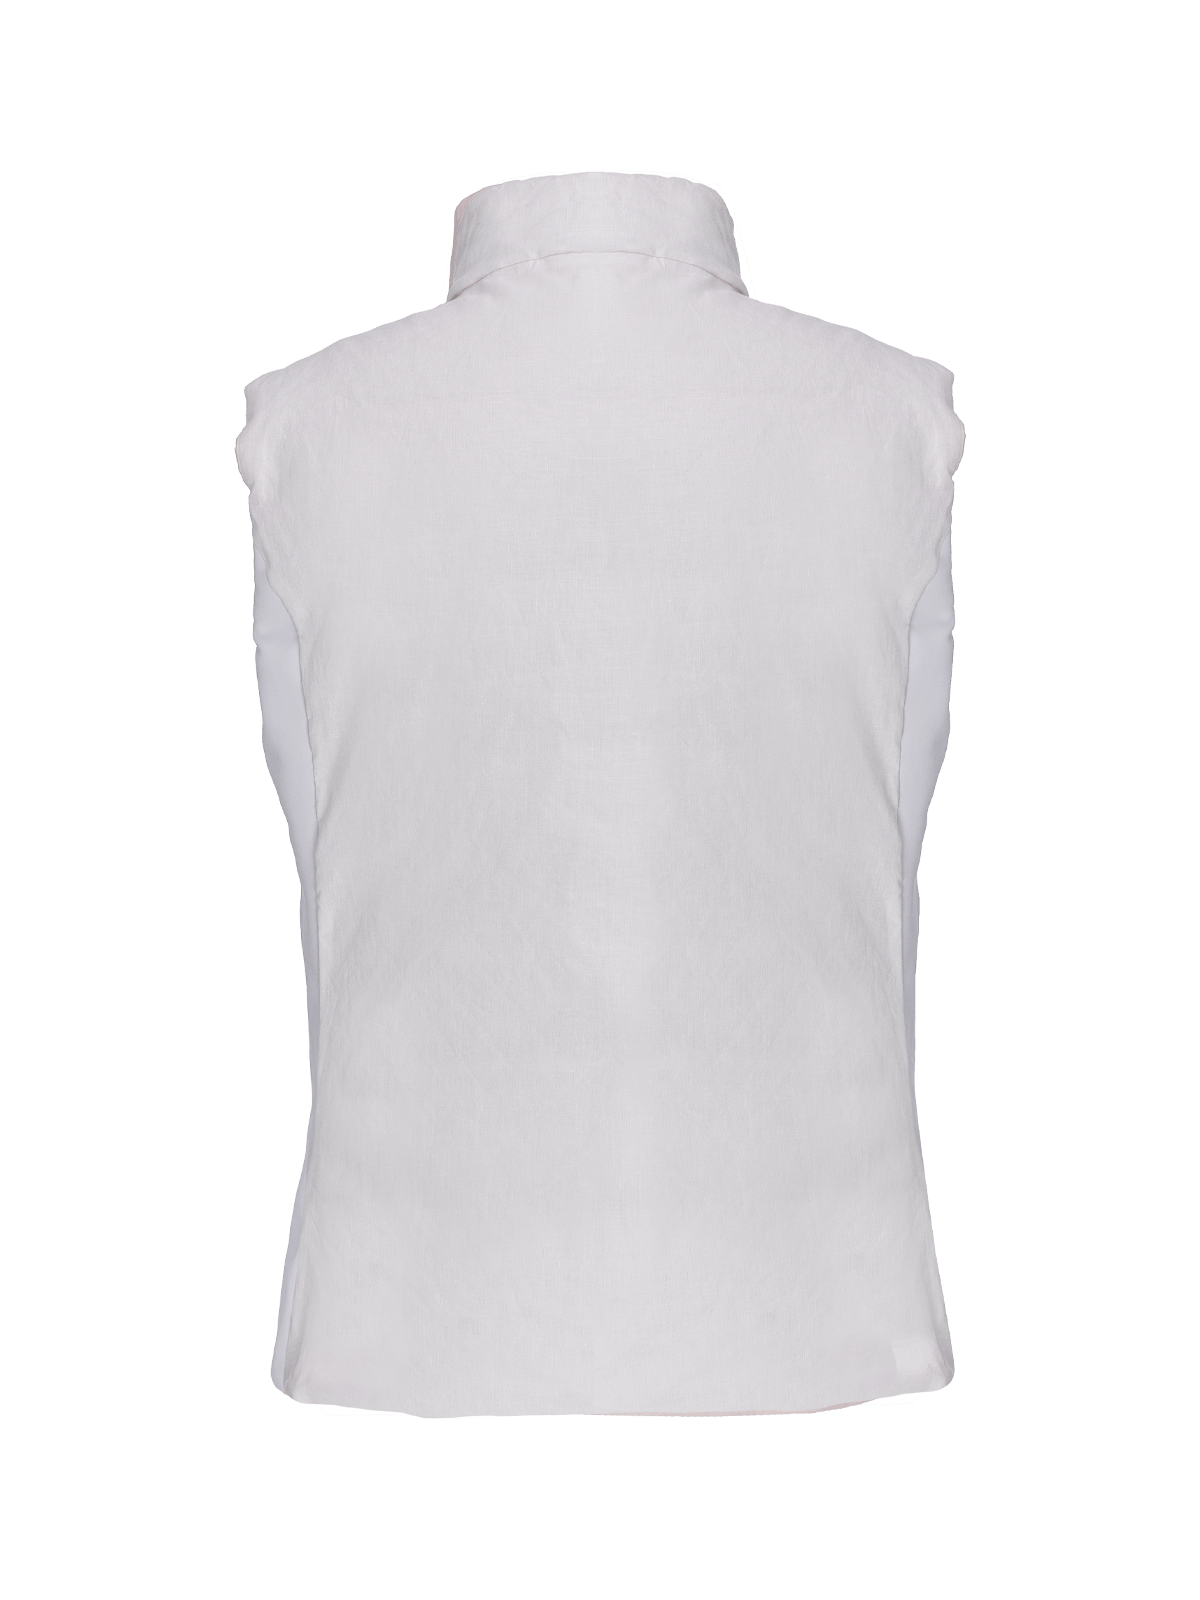 Gilet Ischia reversible for woman 100% Capri white linen gilet back